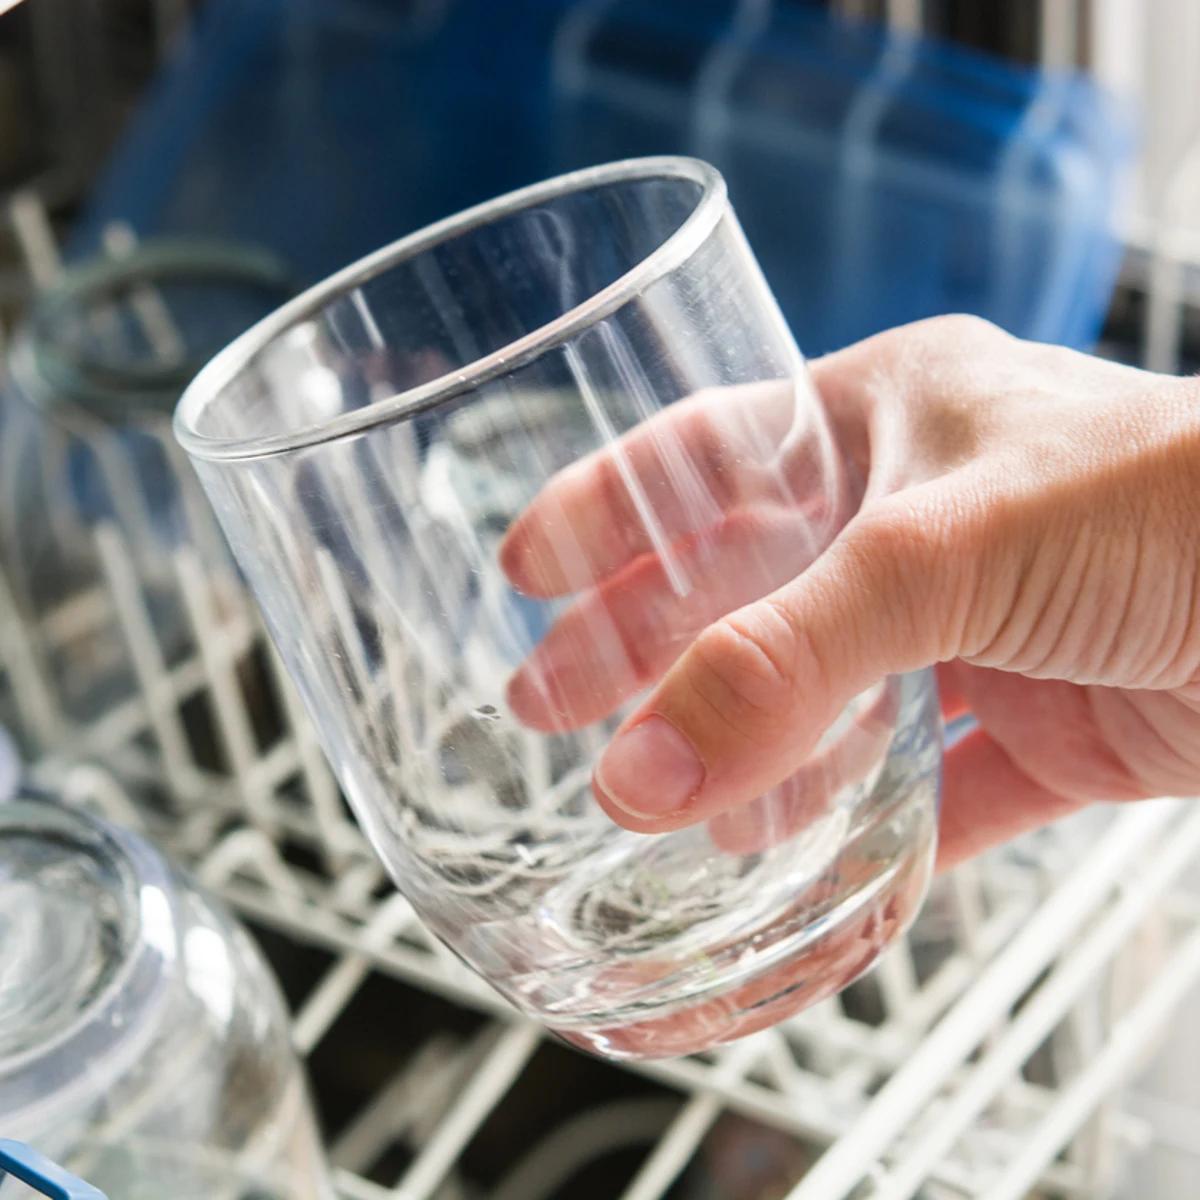 manchas vasos lavavajillas - Cómo quitar manchas a vasos